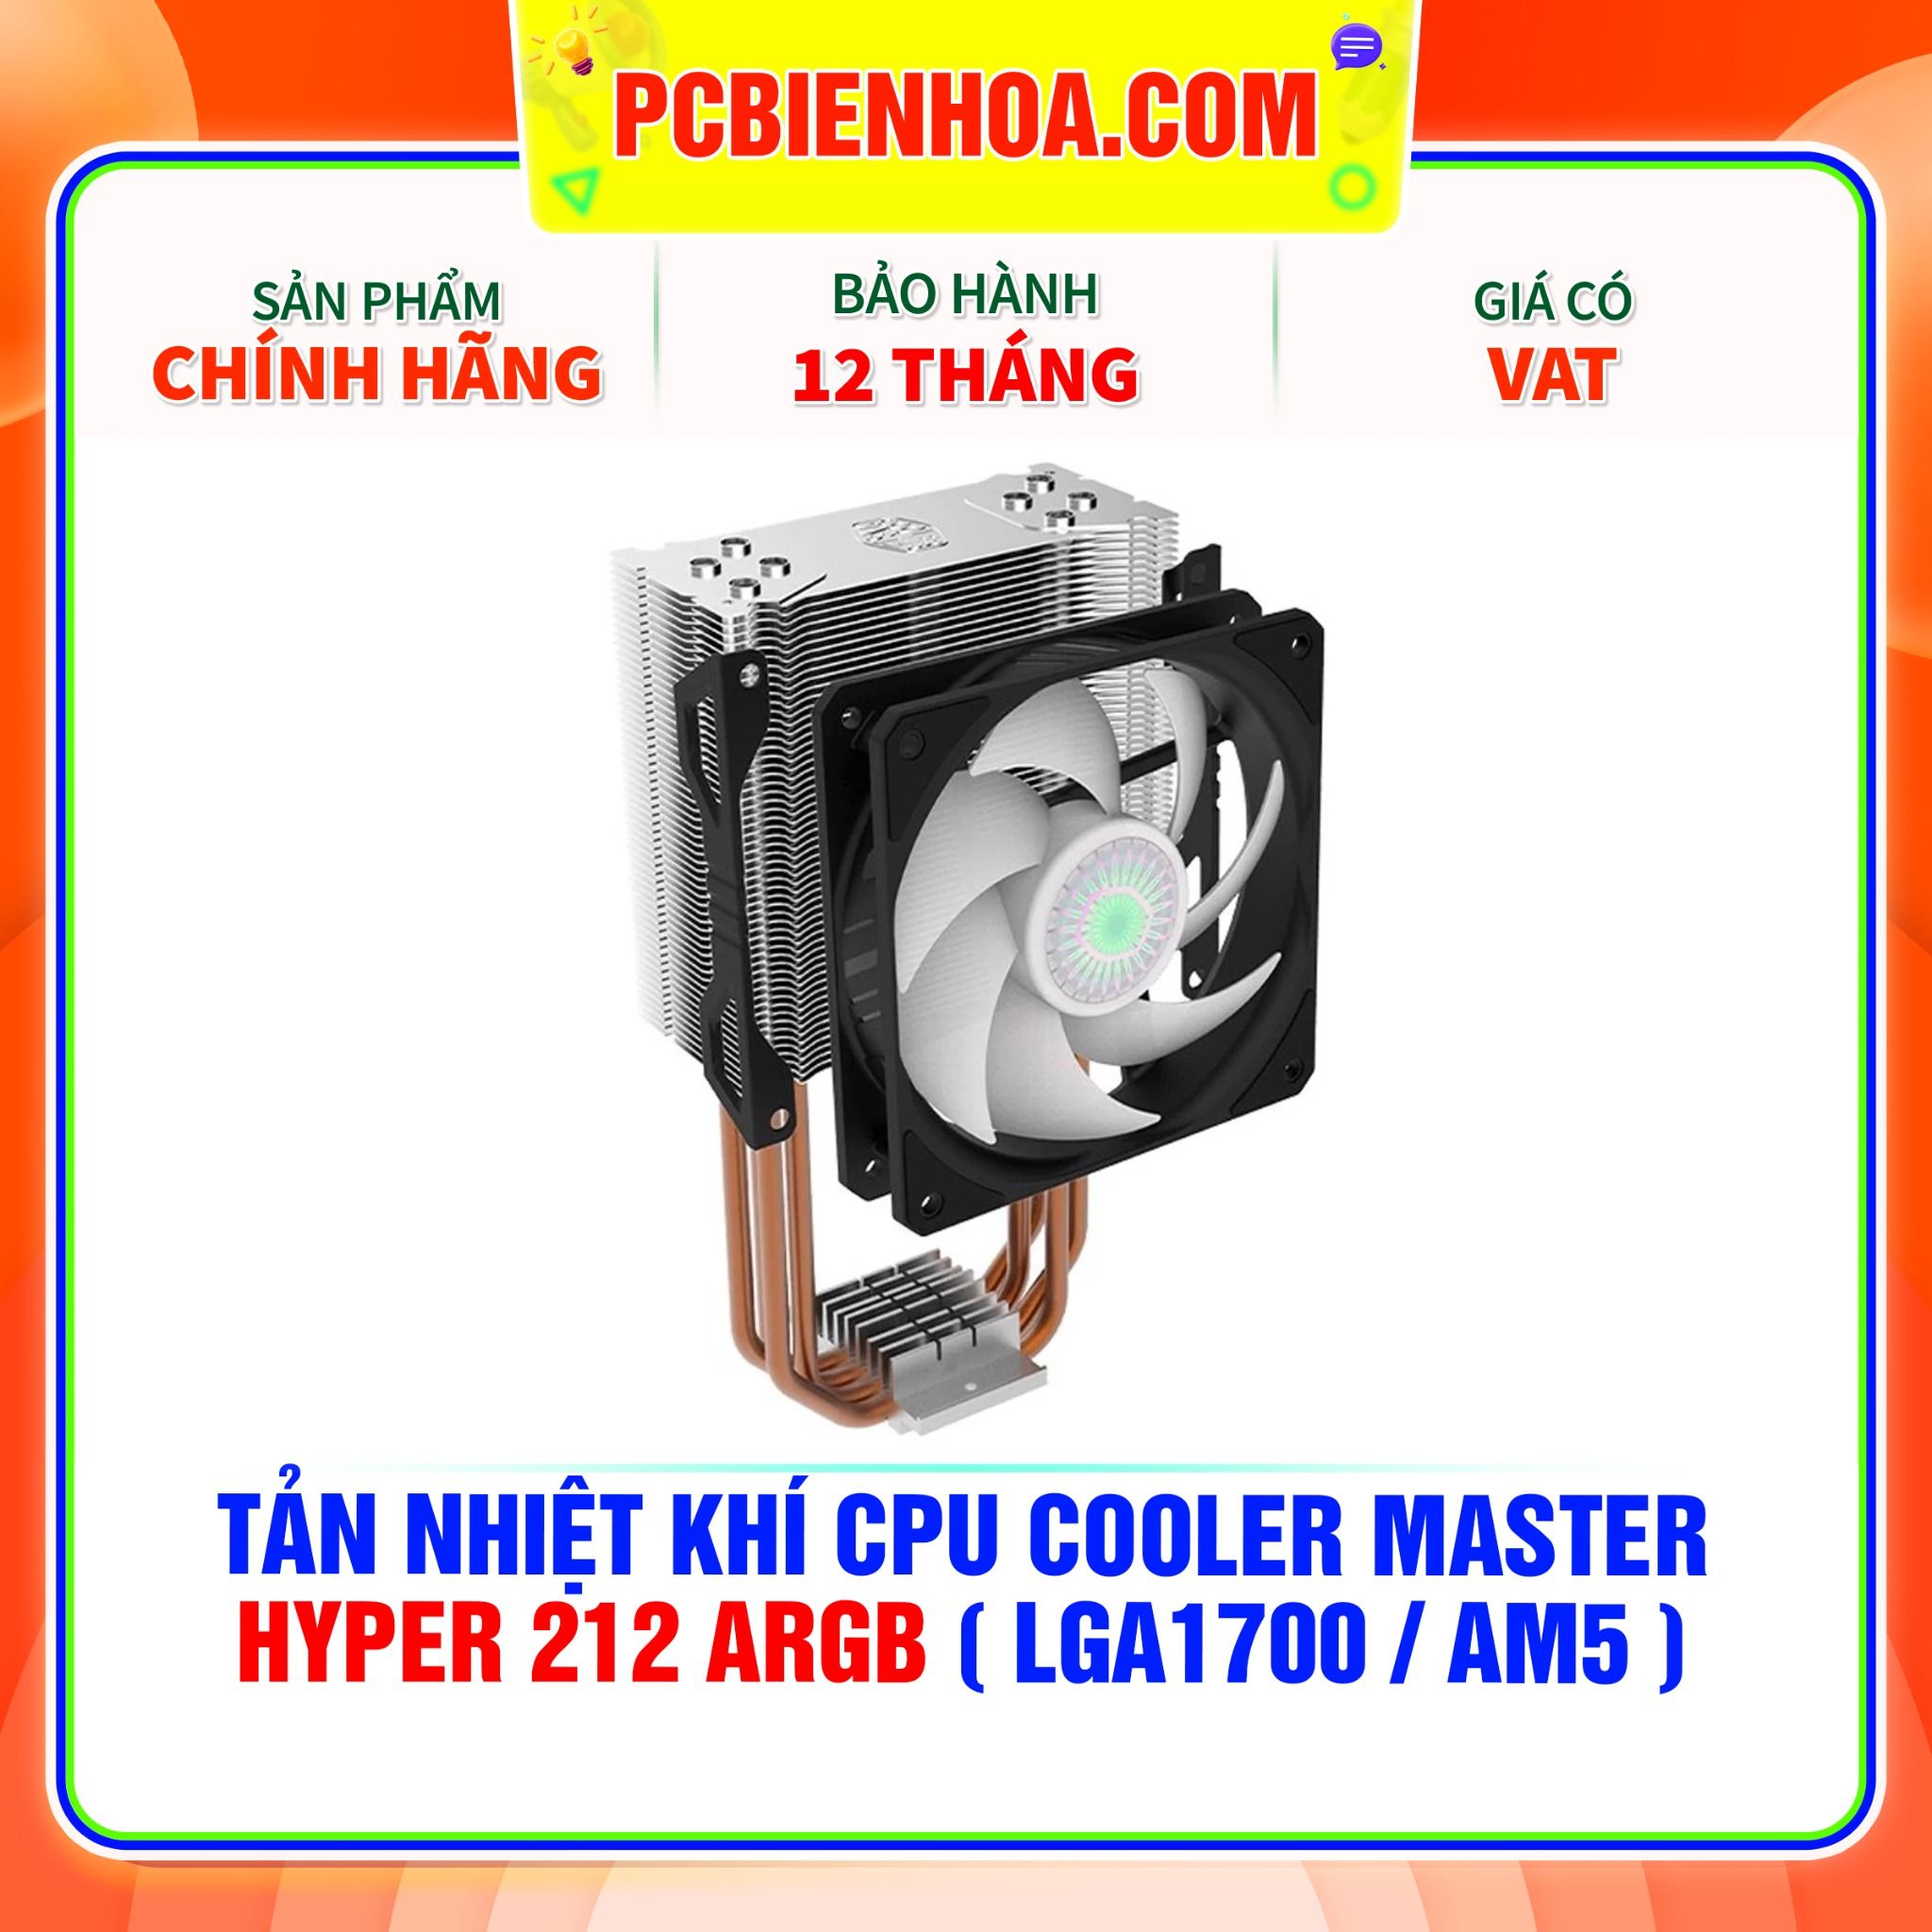  TẢN NHIỆT KHÍ CPU COOLER MASTER HYPER 212 ARGB ( HỖ TRỢ SOCKET LGA1700 / AM5 ) 